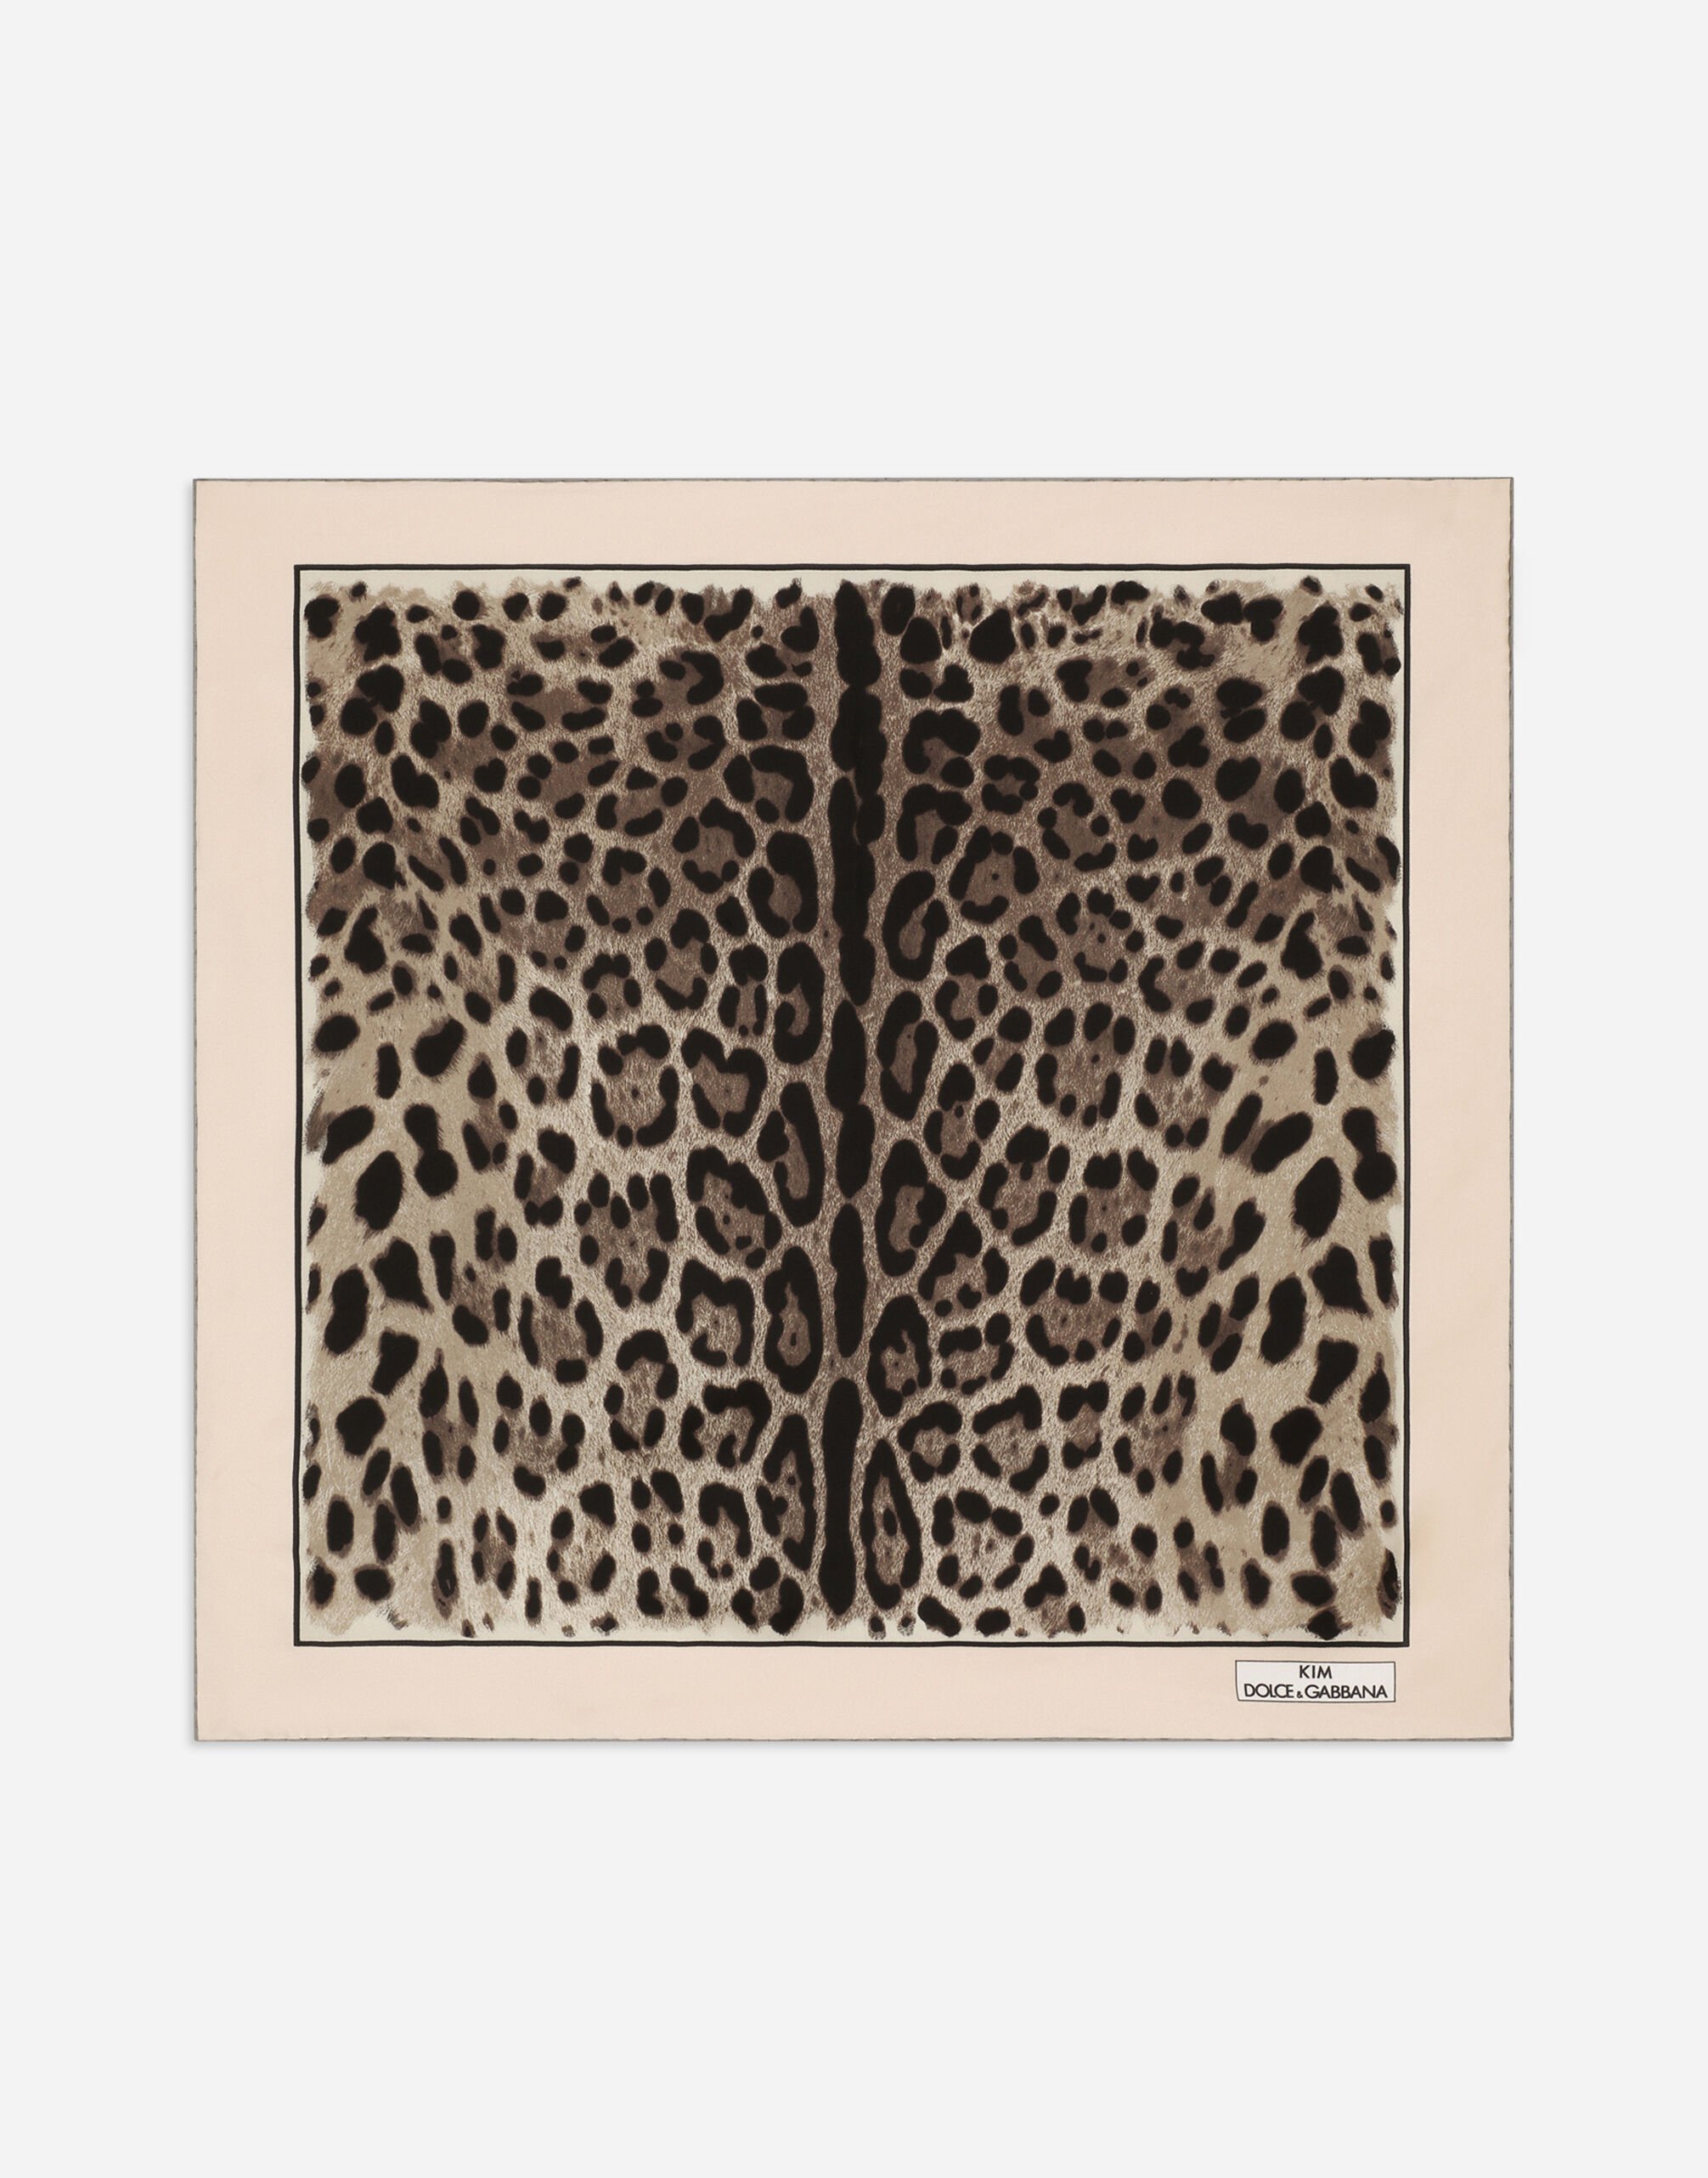 Dolce & Gabbana KIM DOLCE&GABBANA Foulard 70x70 in twill stampa leopardo Stampa animalier BE1446AM568